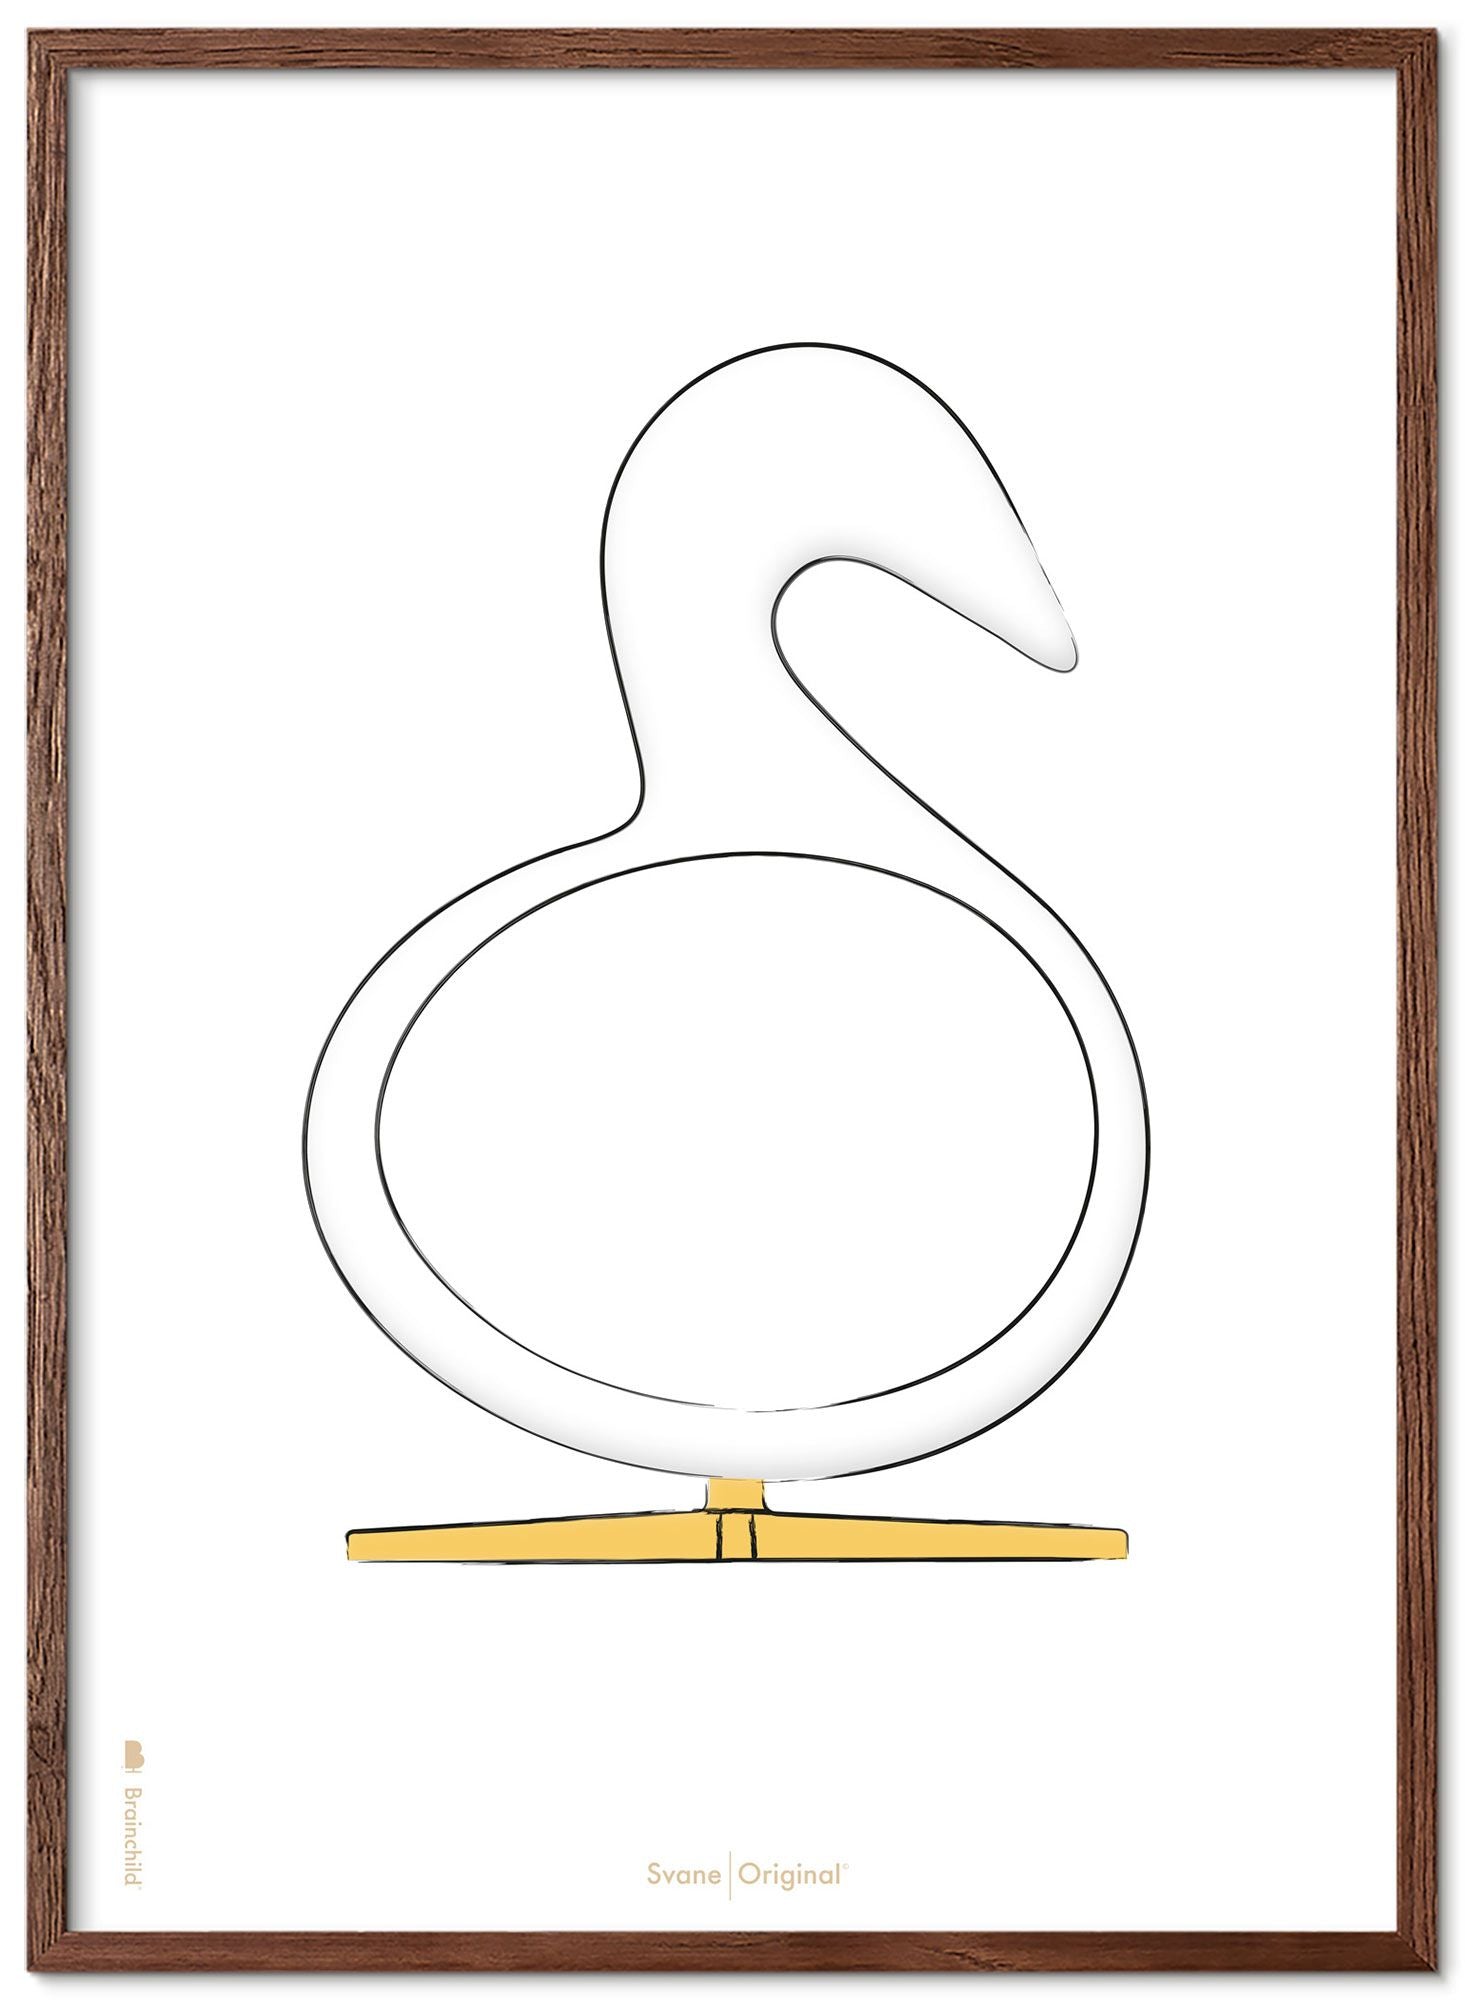 Schema poster di schizzi di disegno del cigno da gioco realizzato in legno scuro A5, sfondo bianco